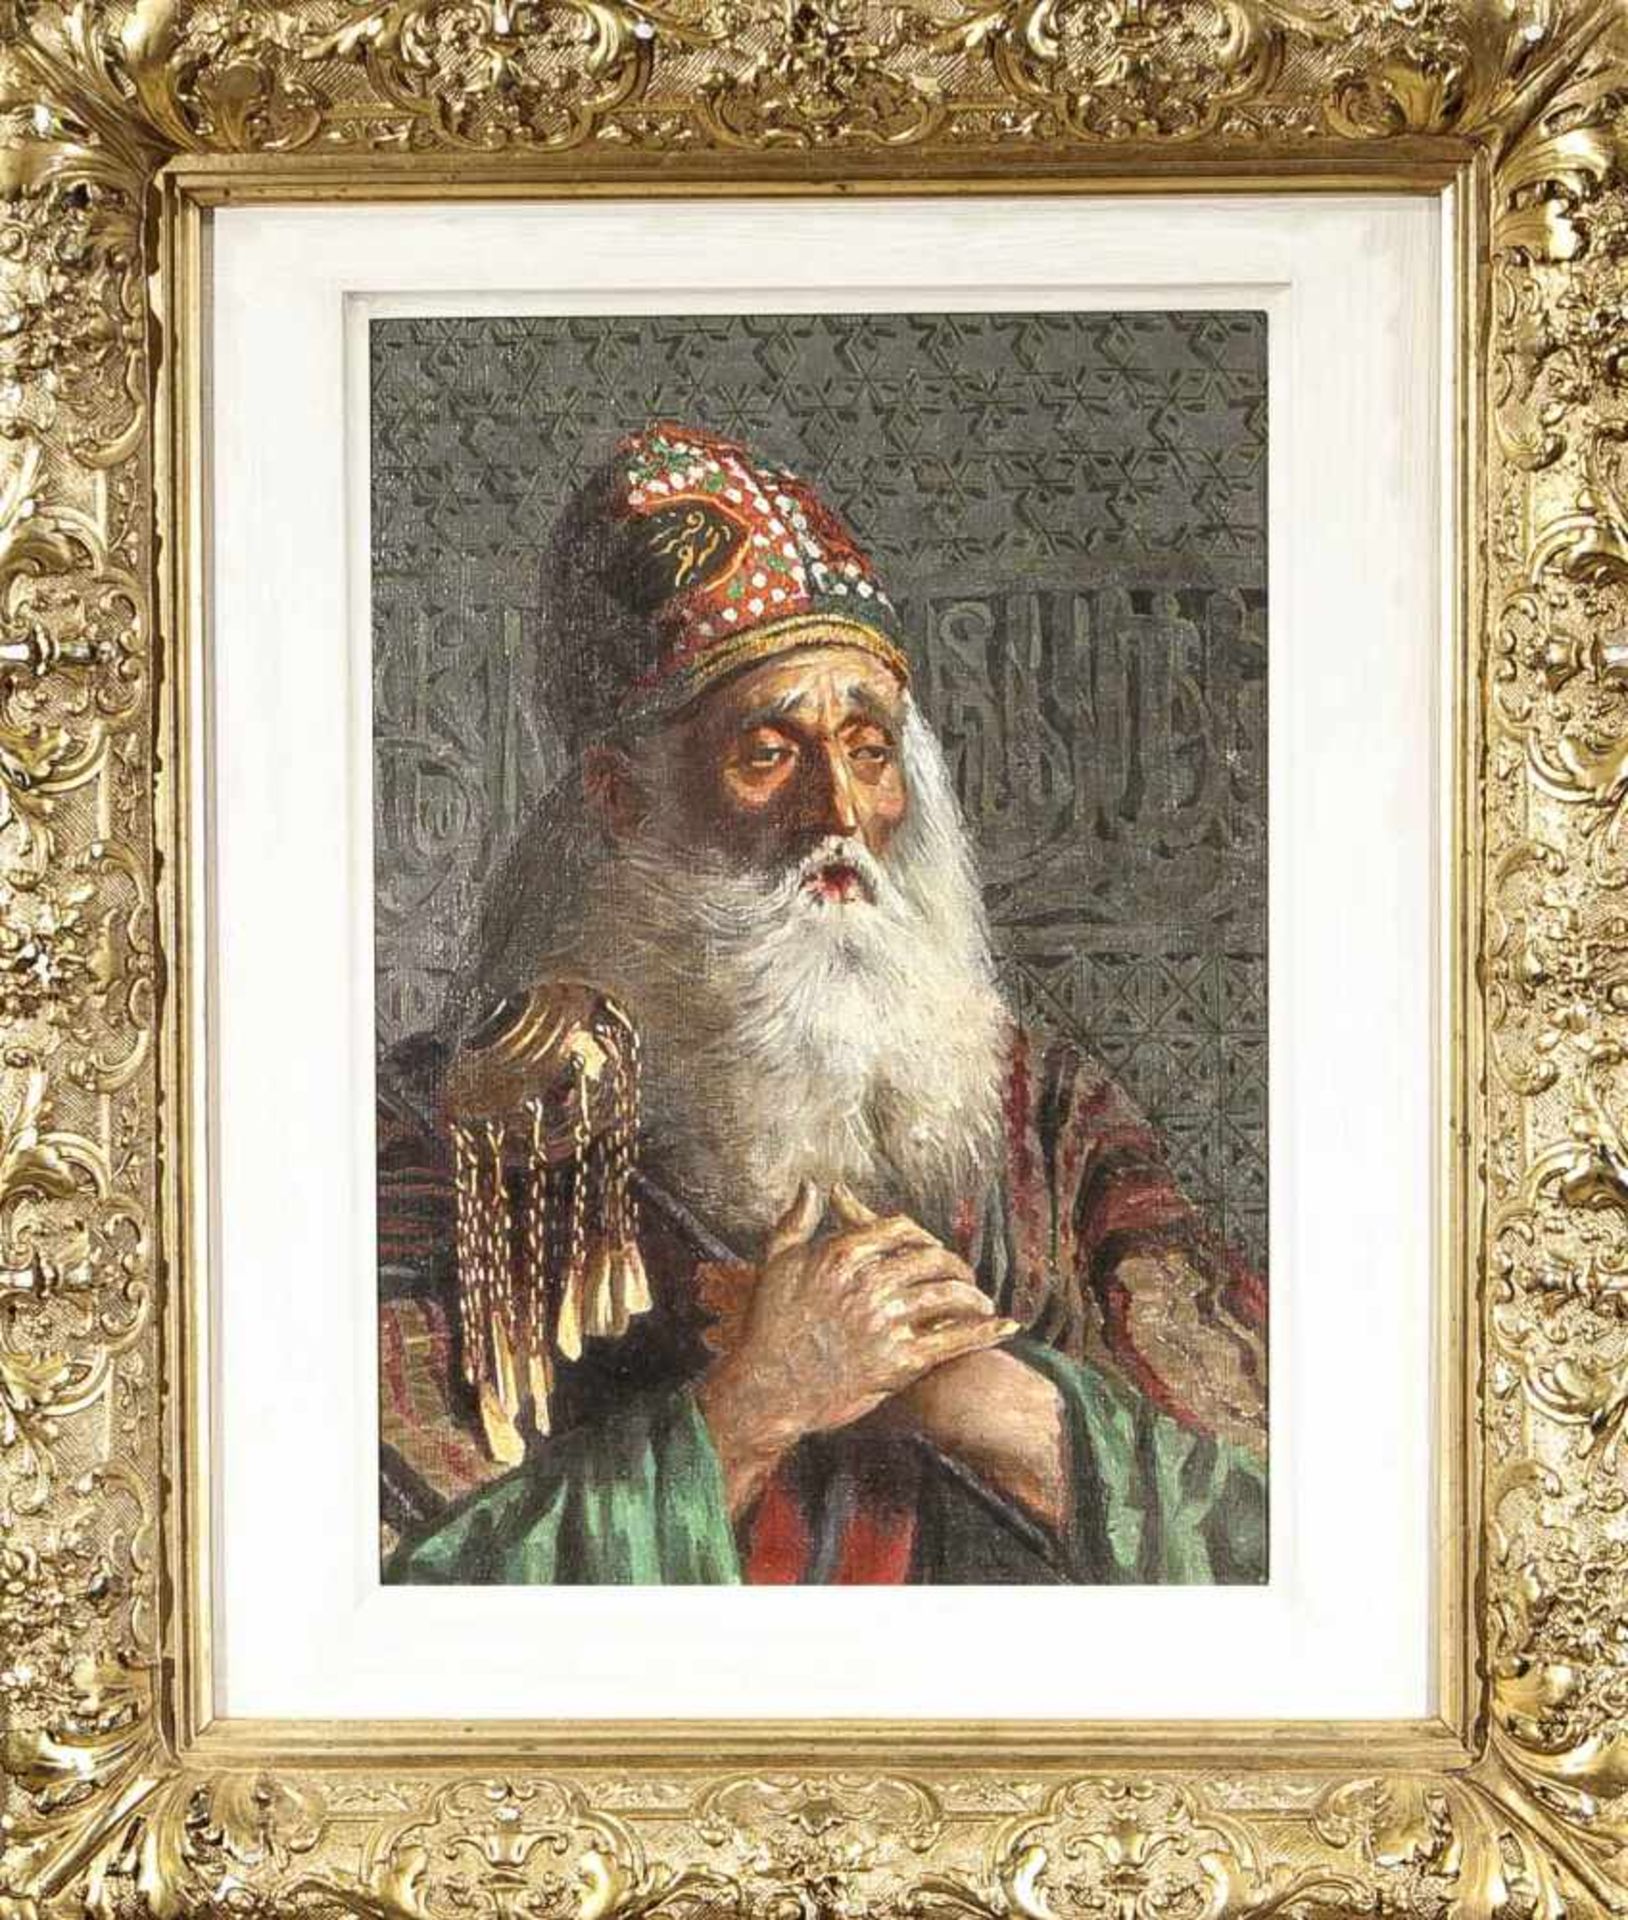 Anonymer Orientalist, 2. H. 20. Jh., betender Derwisch oder Sufi vor einer Palastmauer, Ölauf